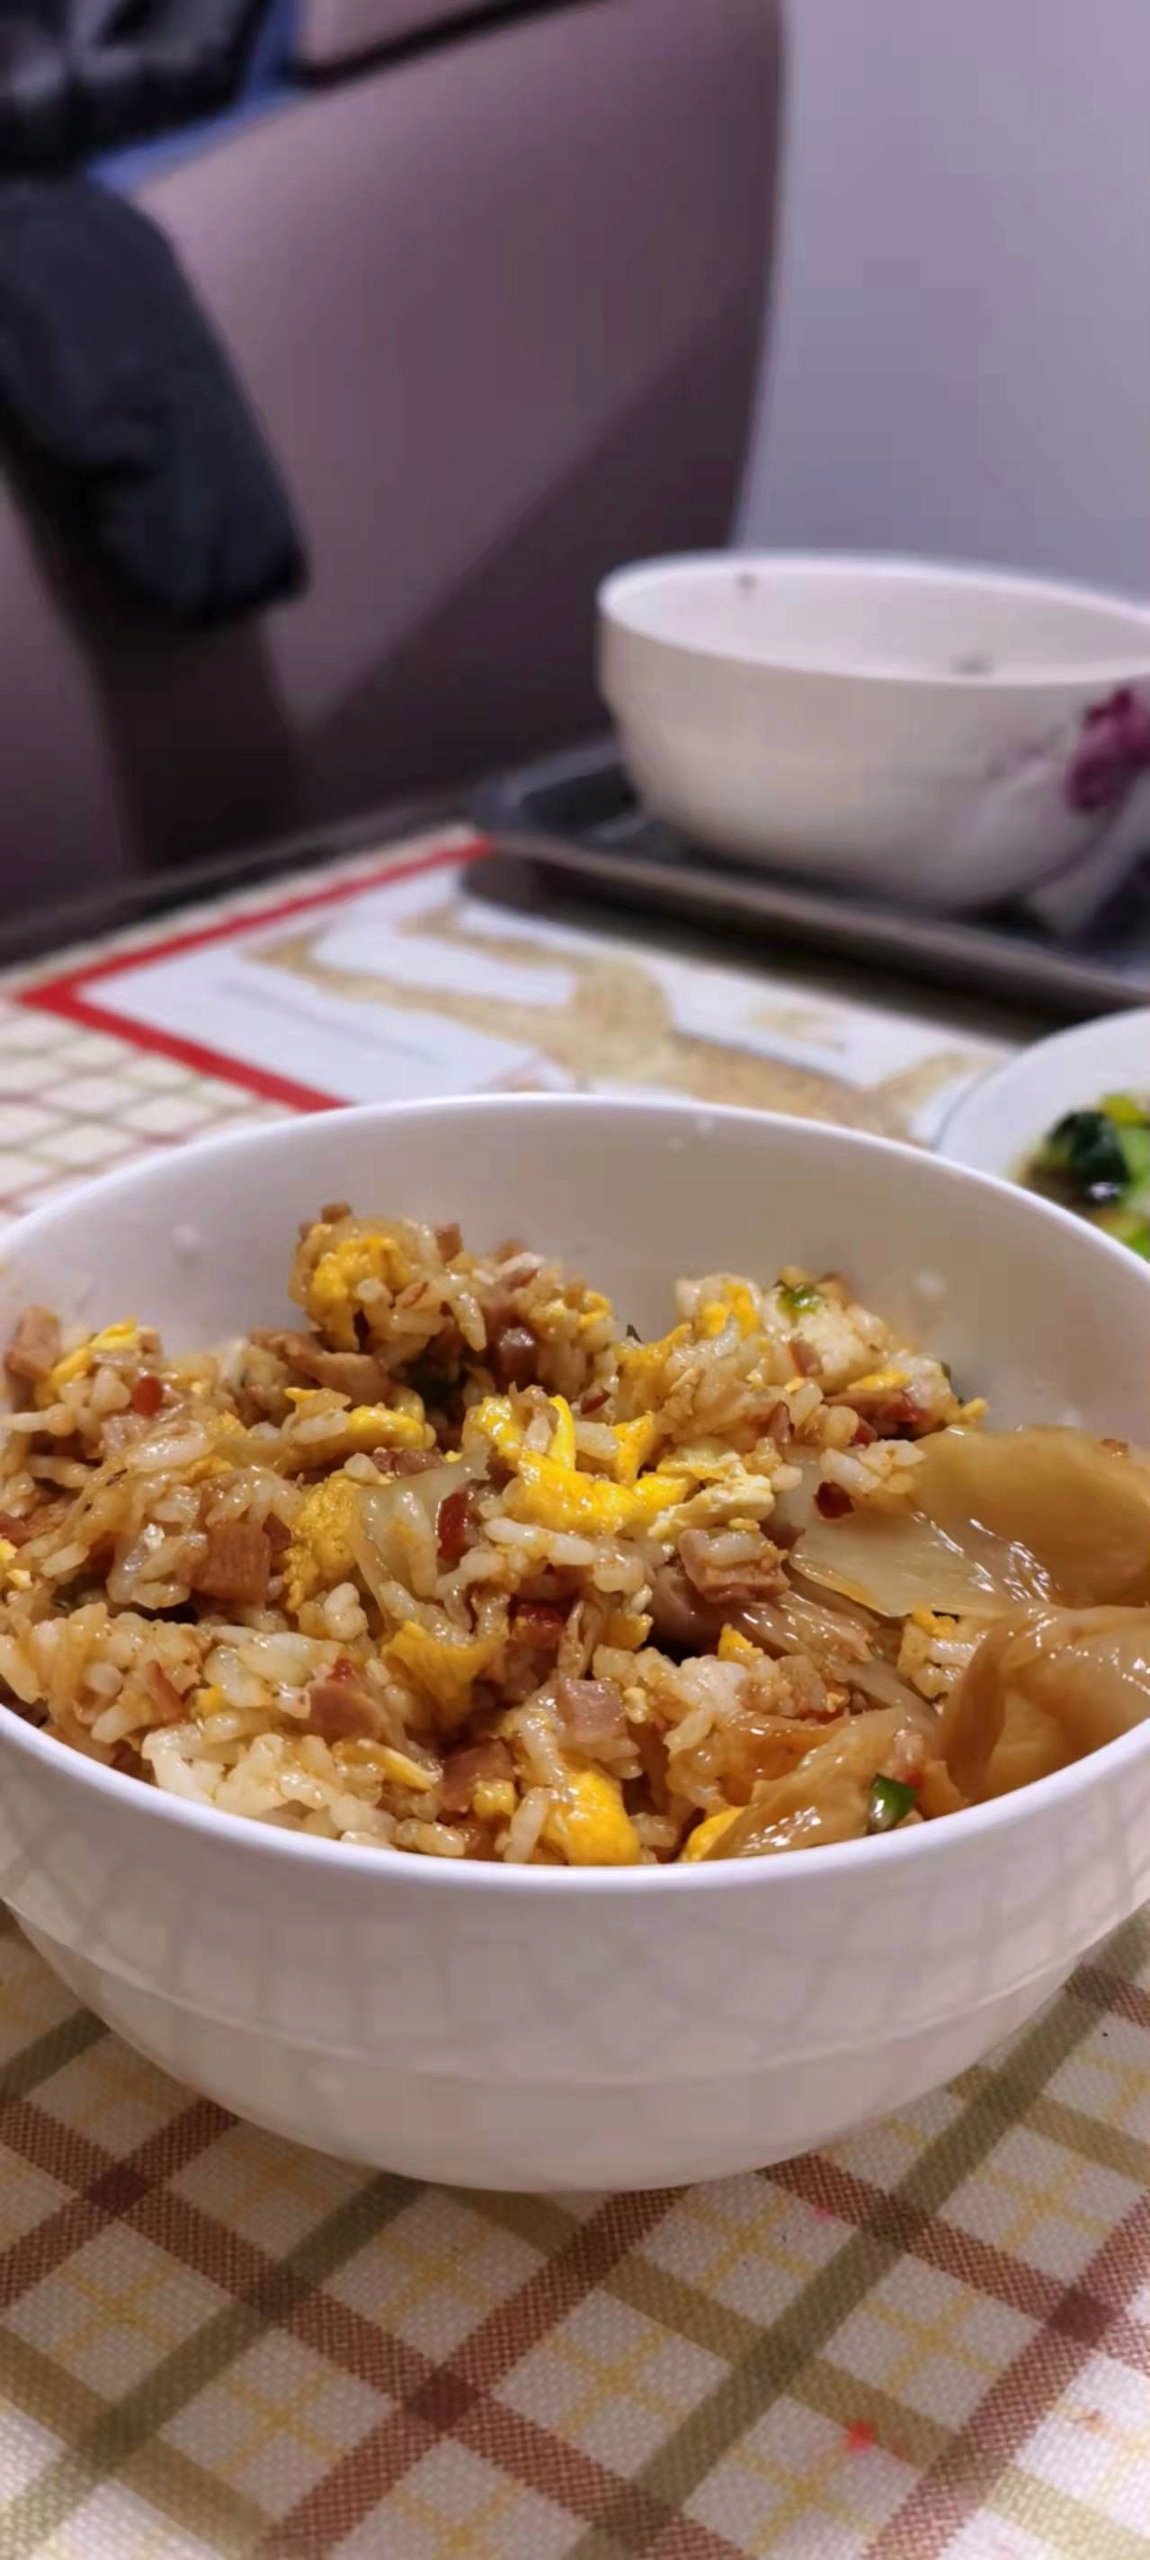 剩米饭最好的归宿——辣白菜炒饭